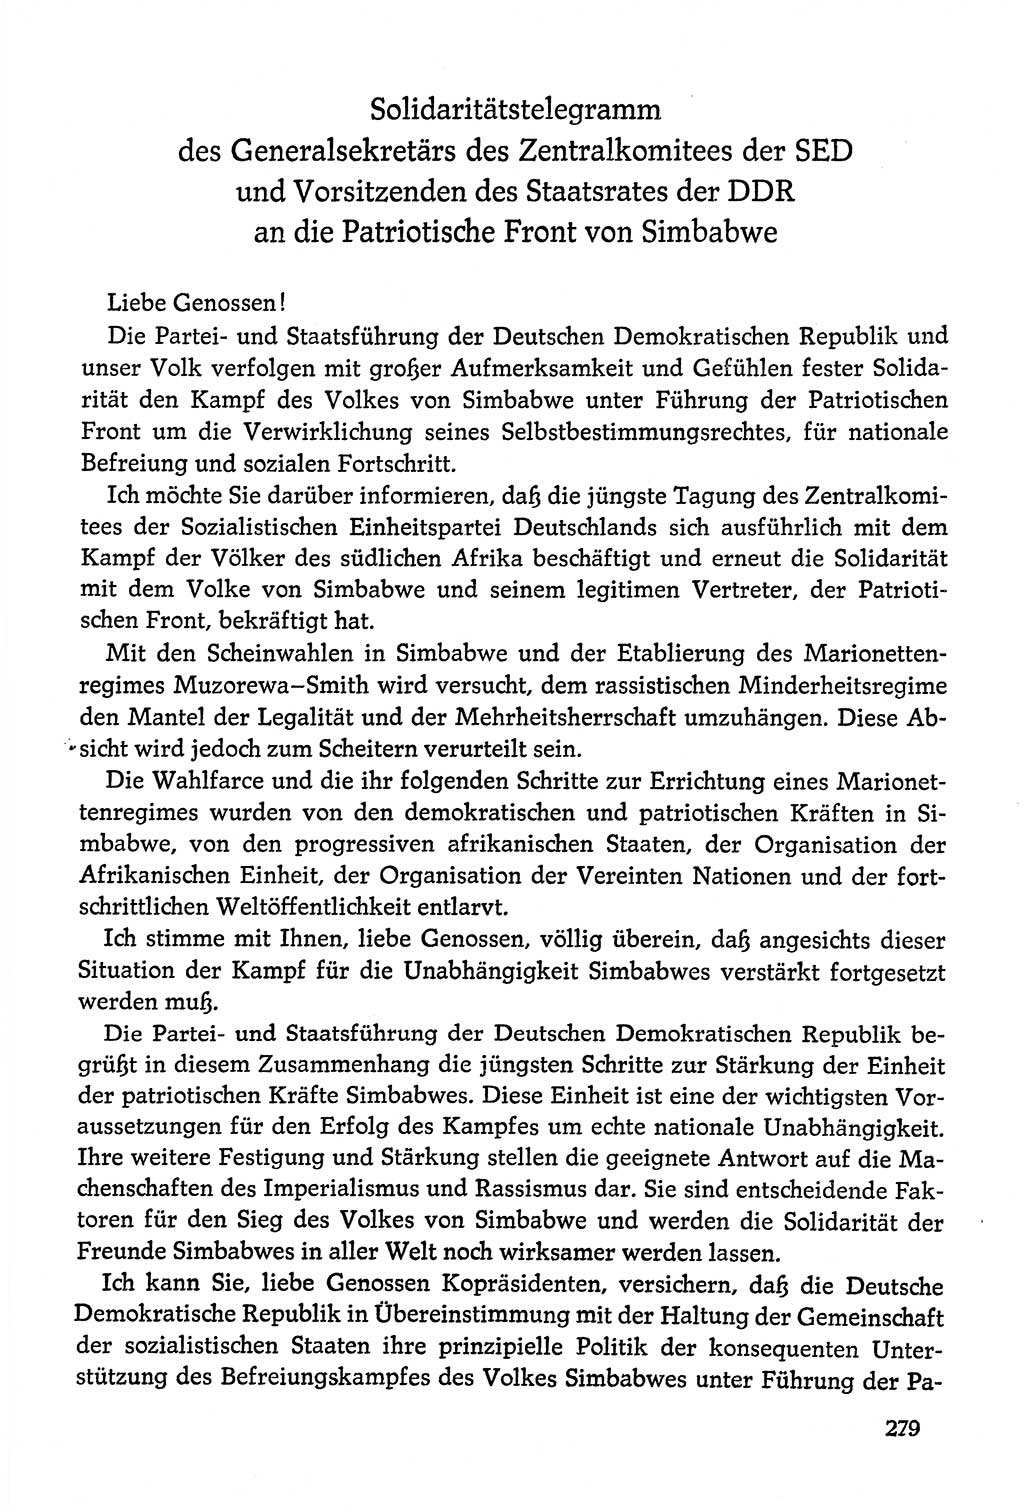 Dokumente der Sozialistischen Einheitspartei Deutschlands (SED) [Deutsche Demokratische Republik (DDR)] 1978-1979, Seite 279 (Dok. SED DDR 1978-1979, S. 279)